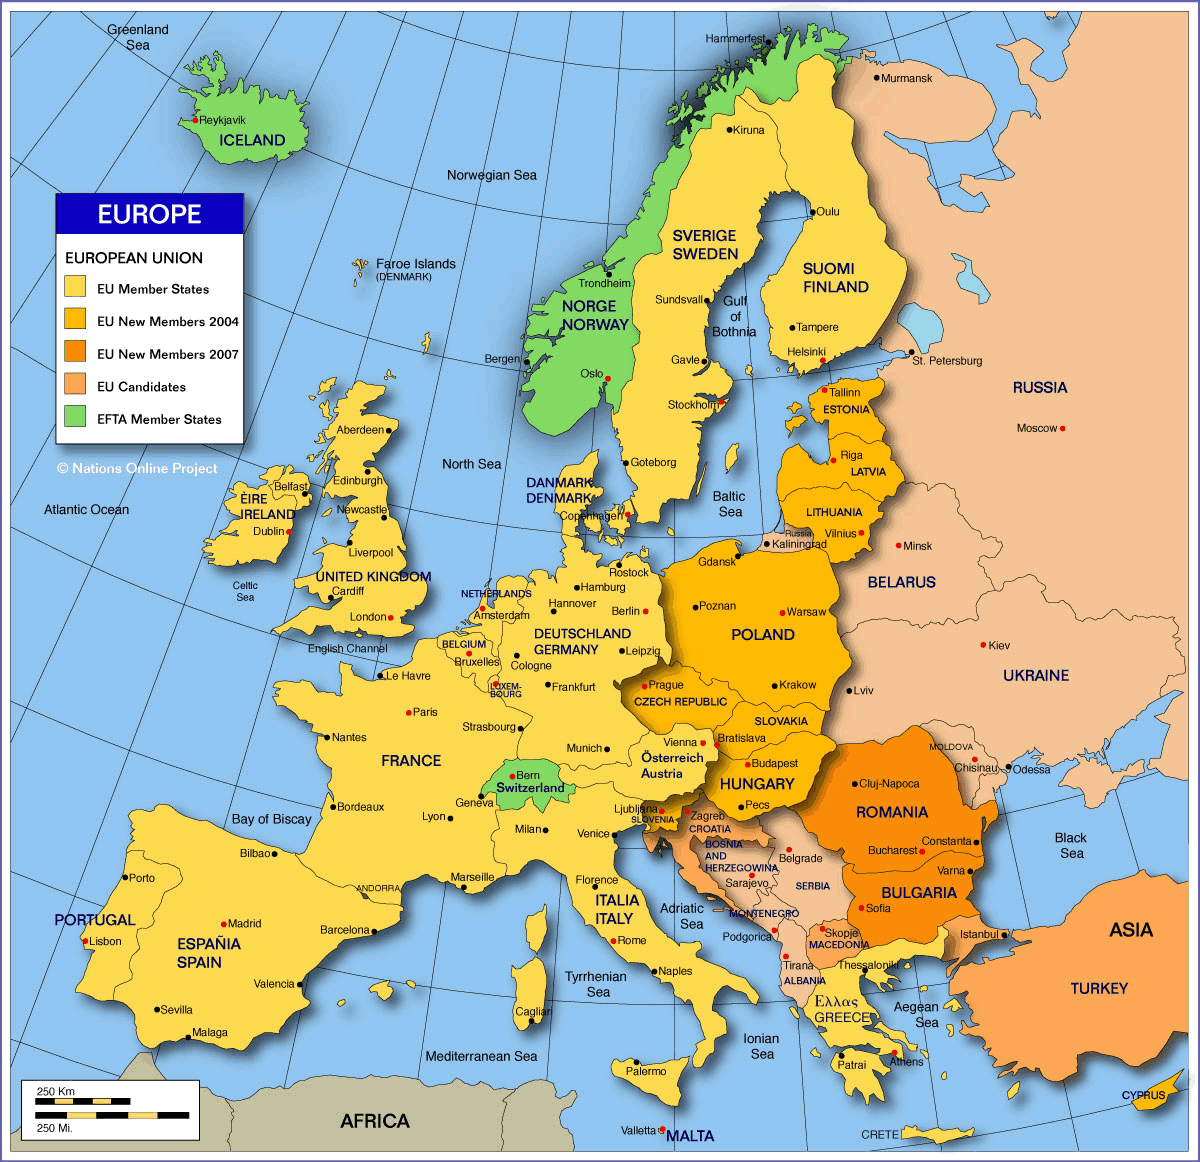 EU countries